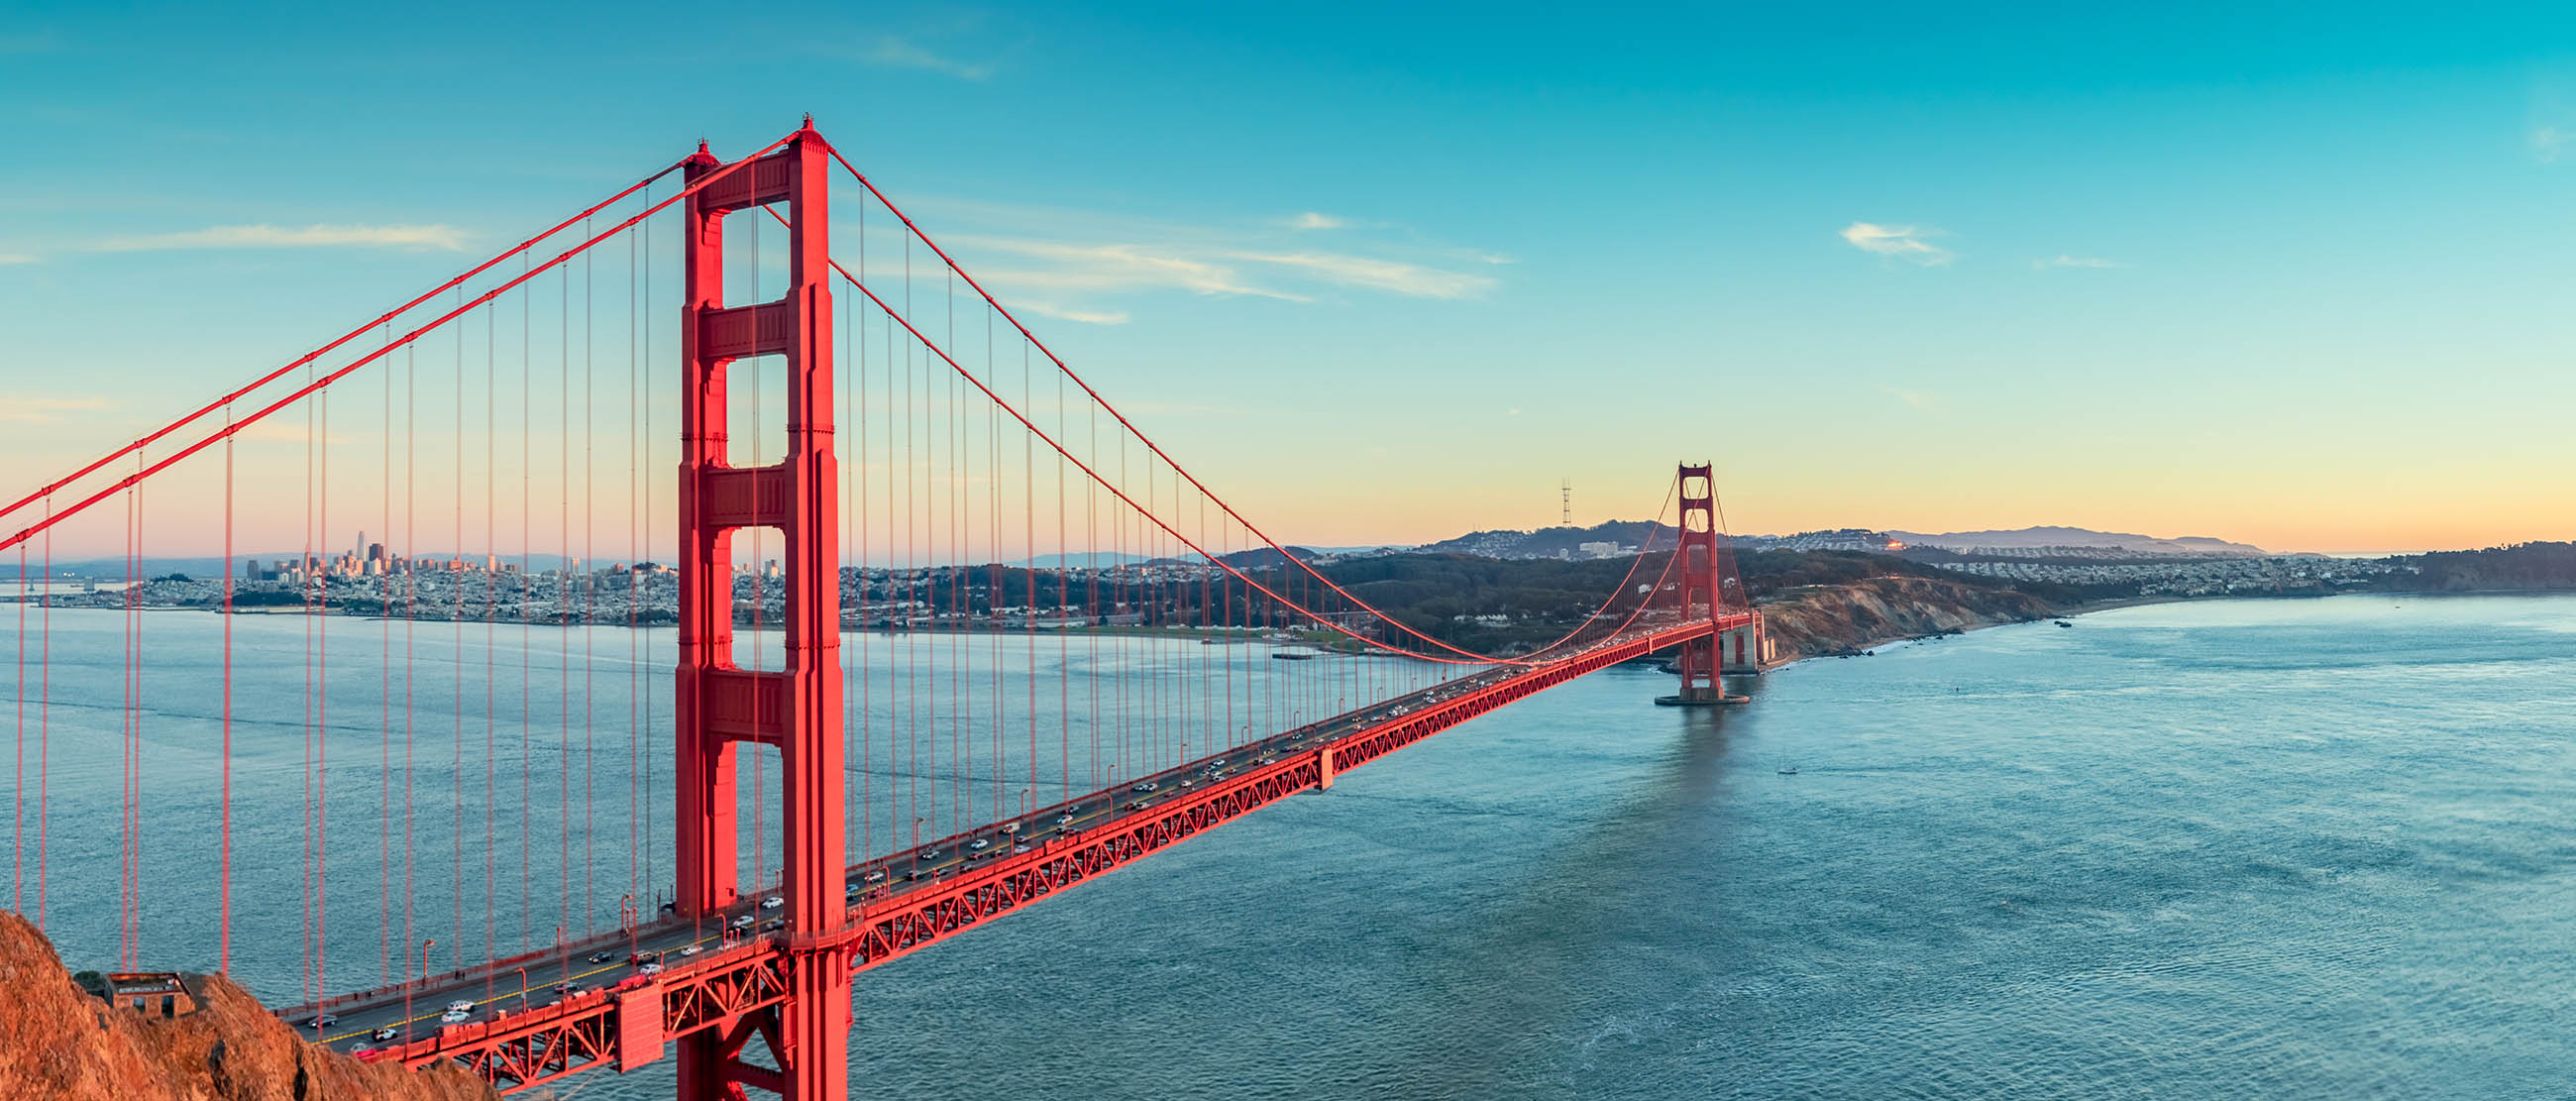 Cây Cầu Vàng huyền thoại, gắn liền với giấc mơ Mỹ của nhiều du khách